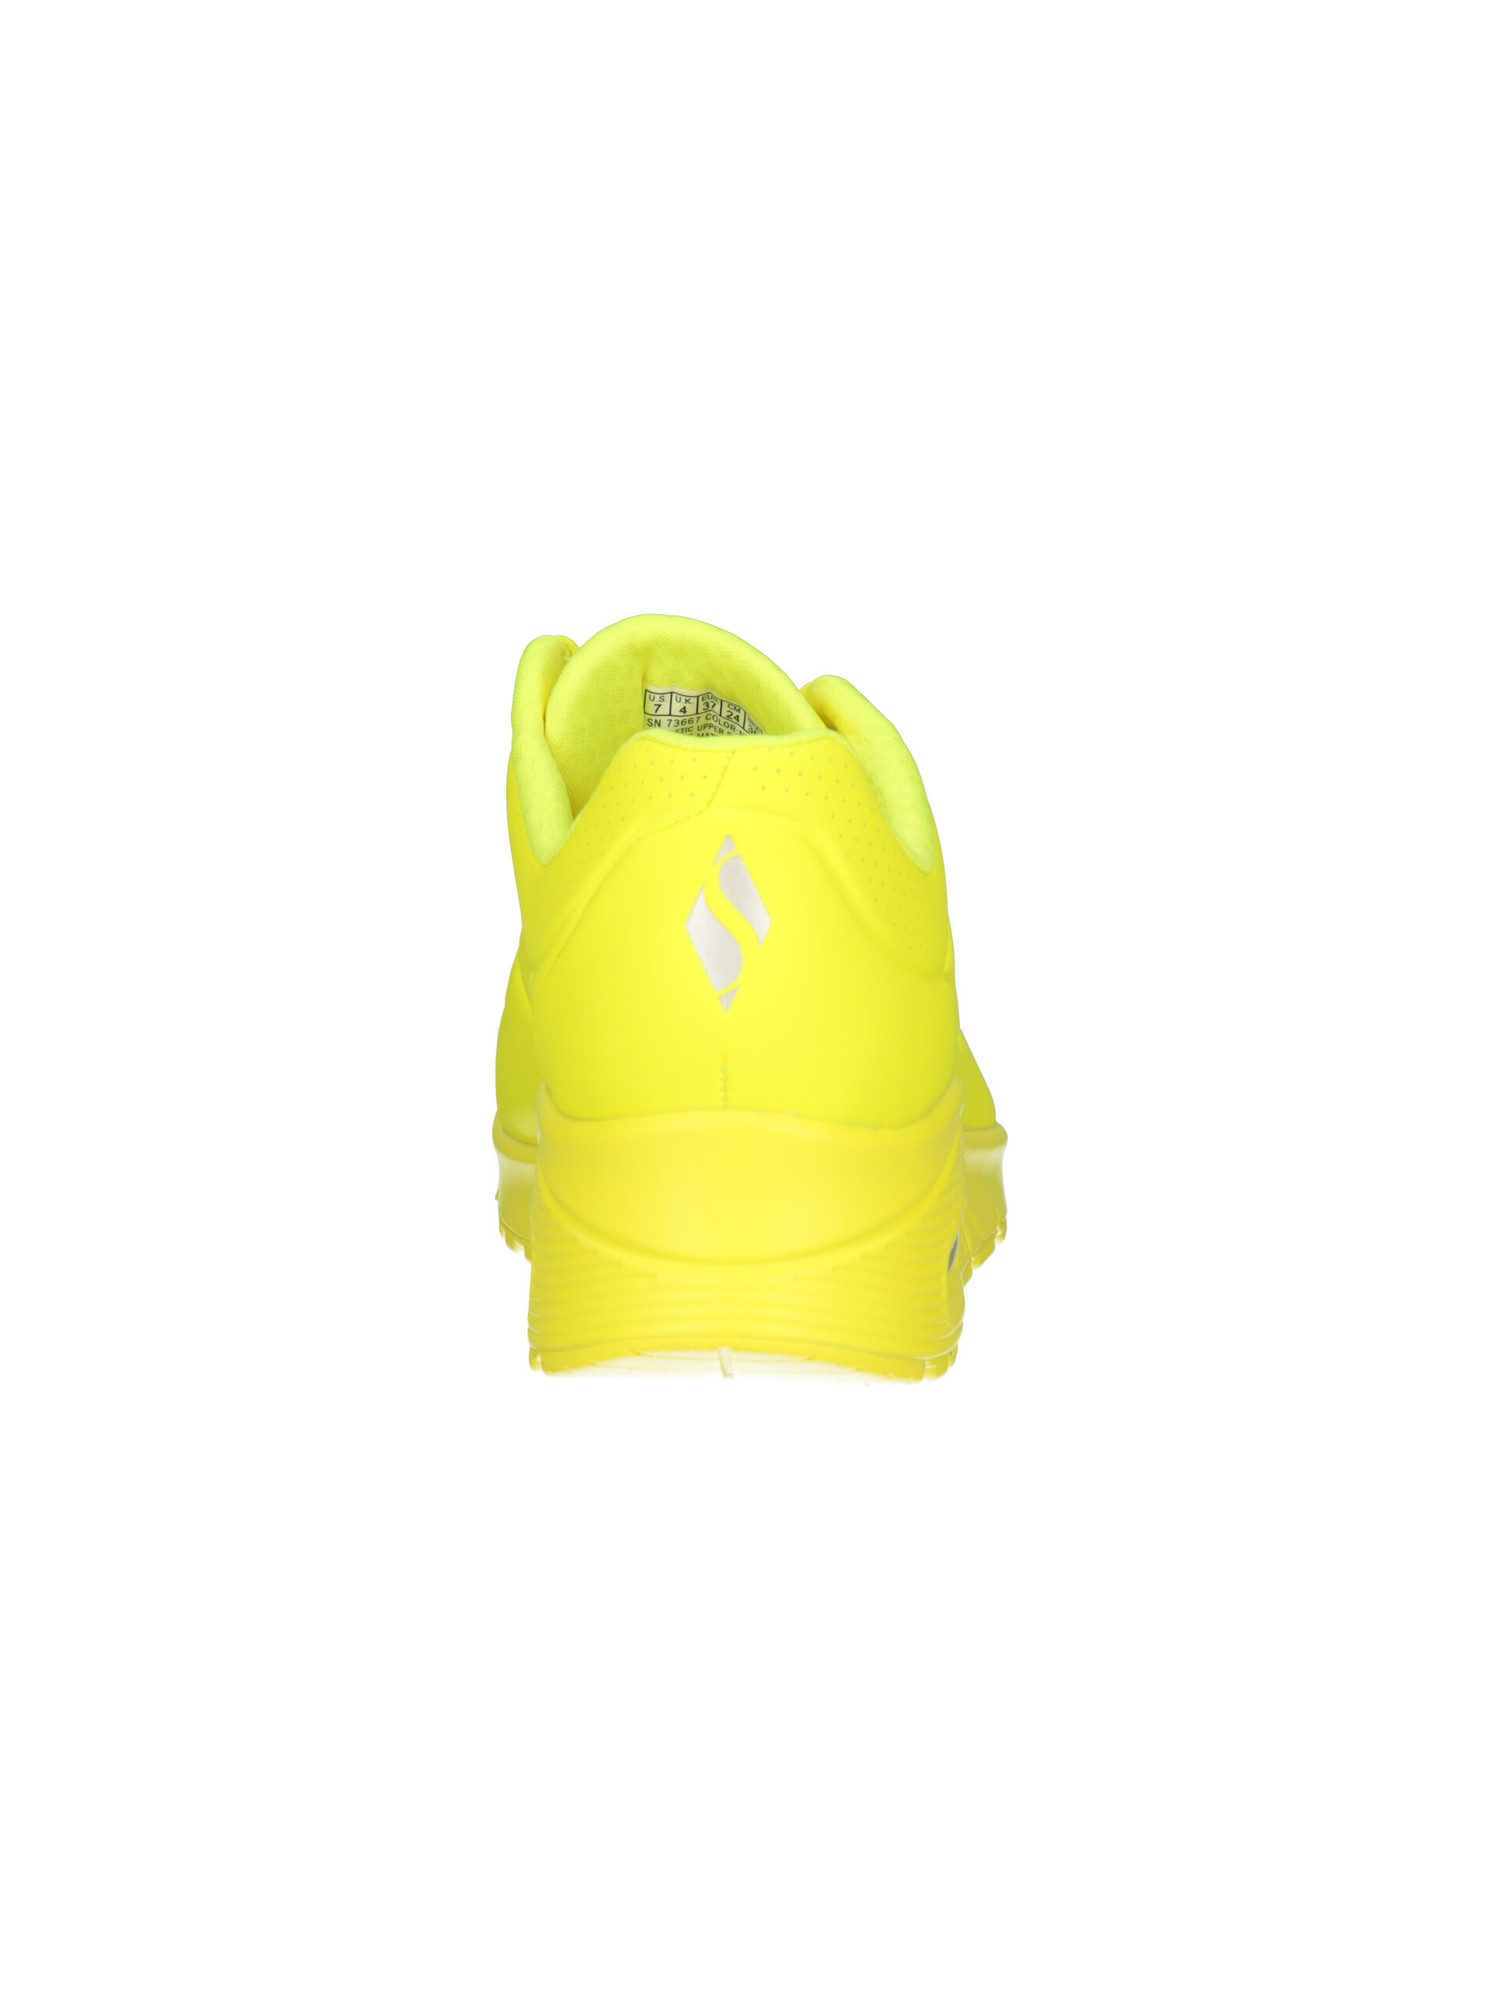 sneaker-skechers-uno-da-donna-gialla-fluo